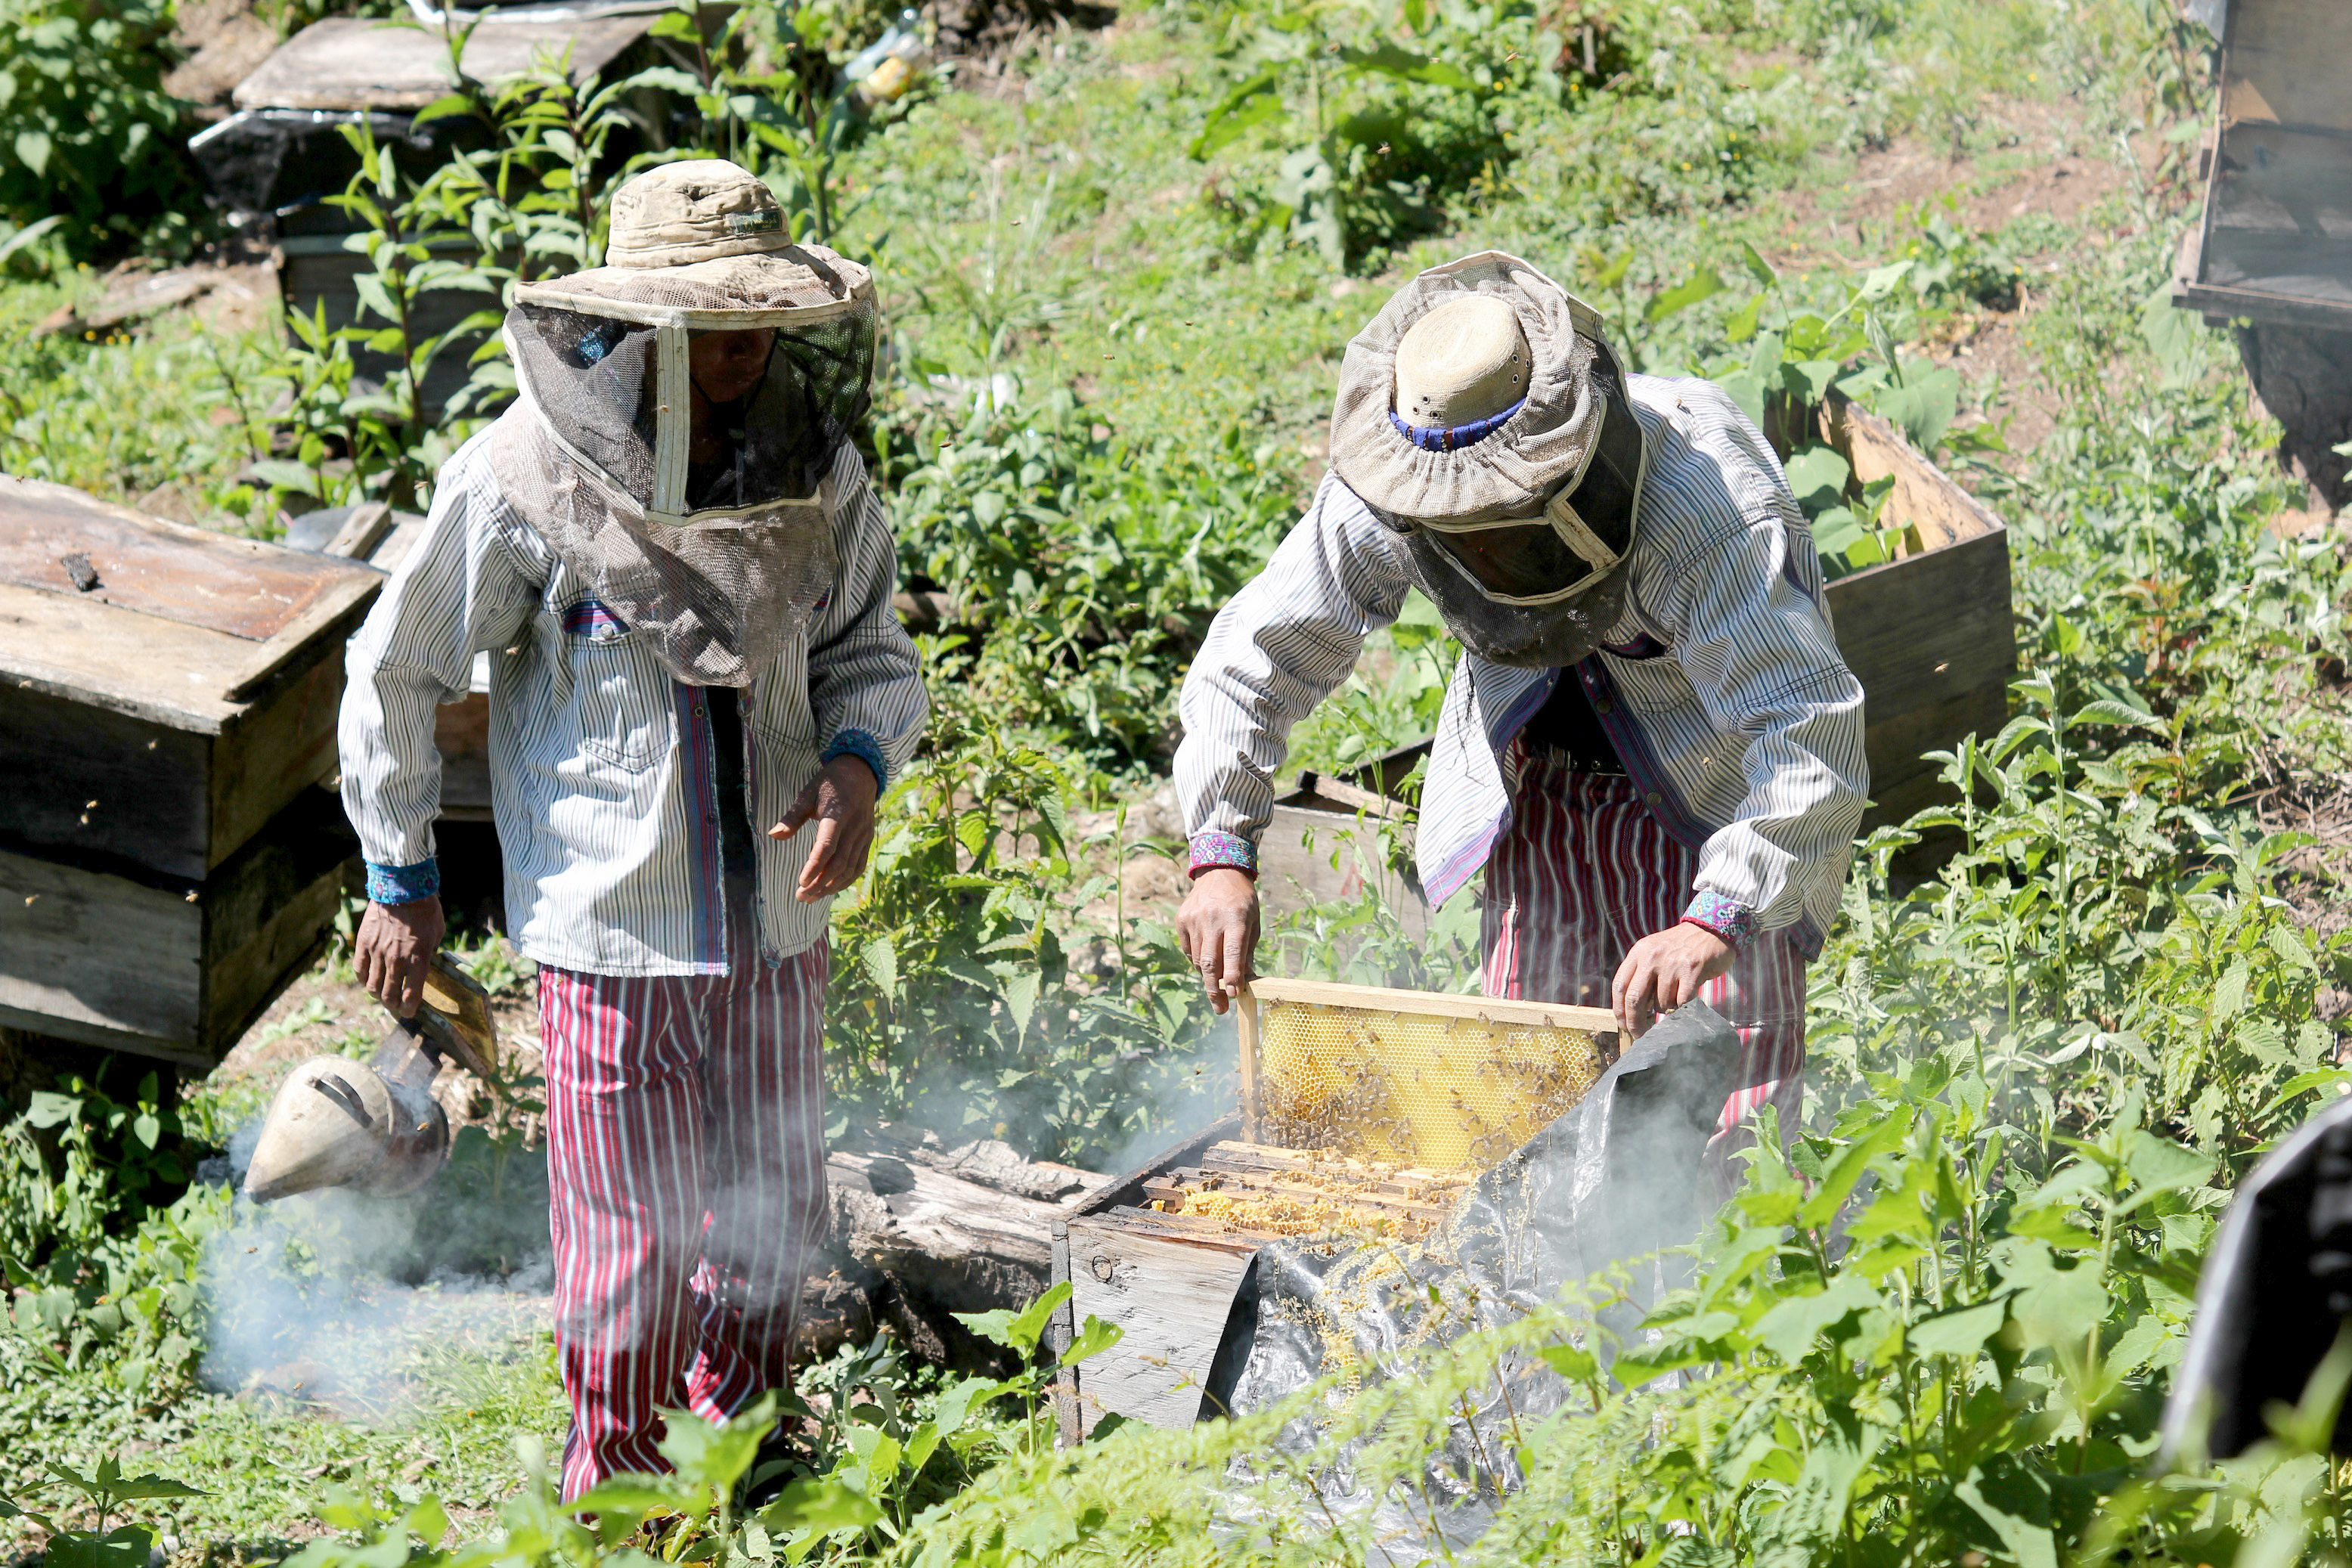 Productores de miel en Todos Santos Cuchumatán, son beneficiados con los proyectos financiados por la Unión Europea que les permitirán exportar miel. (Foto Prensa Libre: Mike Castillo)